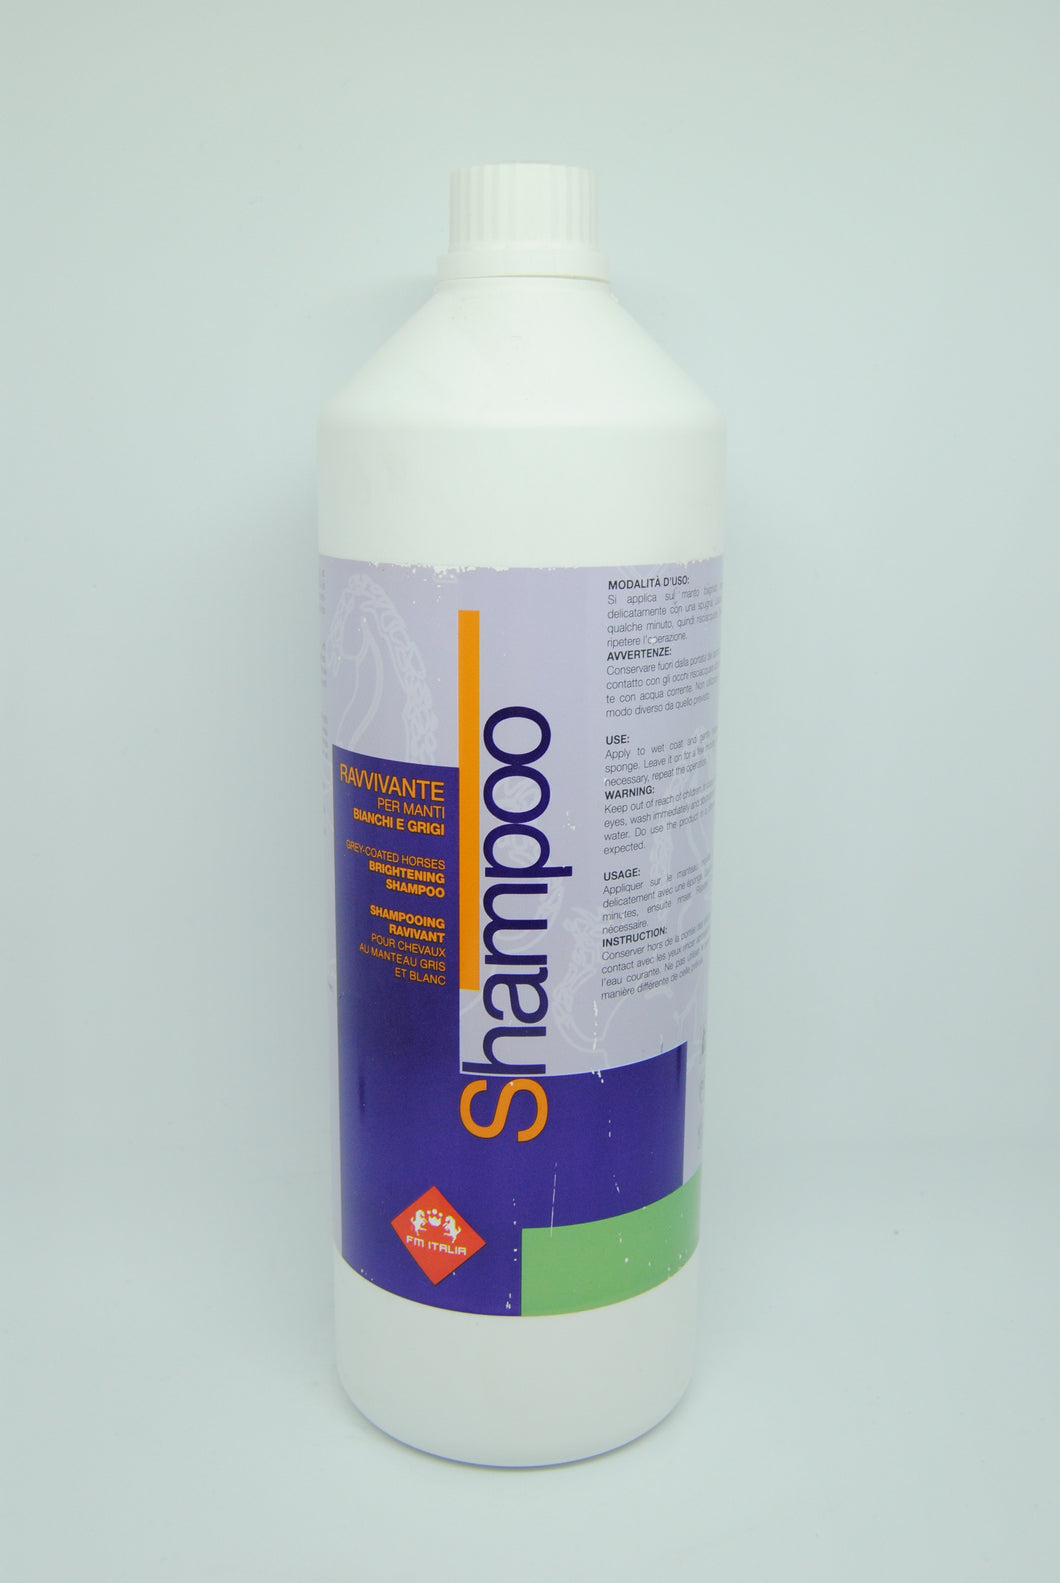 Shampoo ravvivante per manti bianchi e grigi